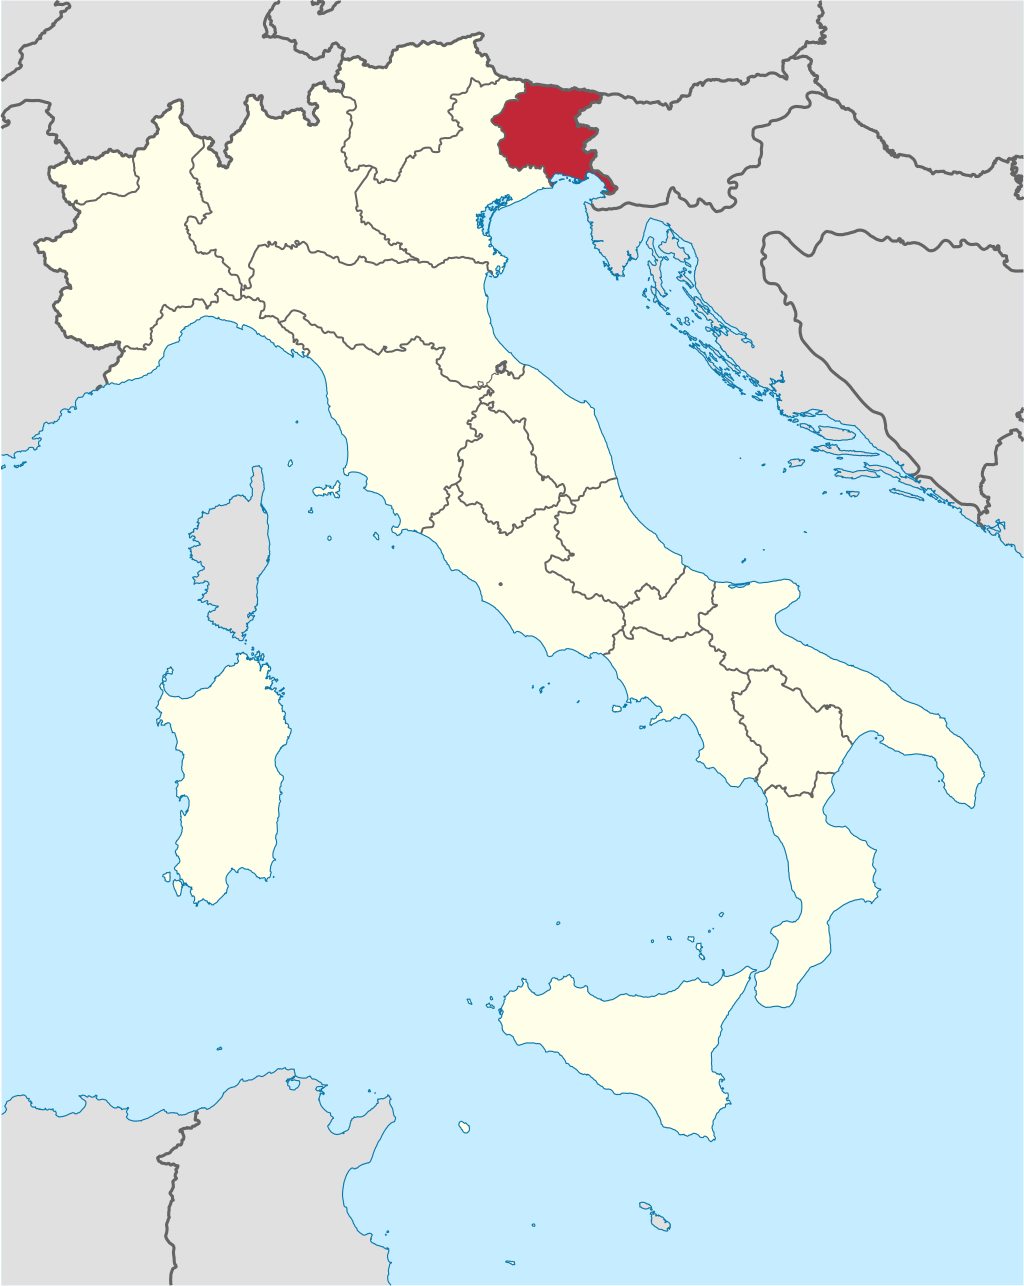 Usine Aldi Urbex location or around the region Friuli-Venezia Giulia (Pordenone), Italy